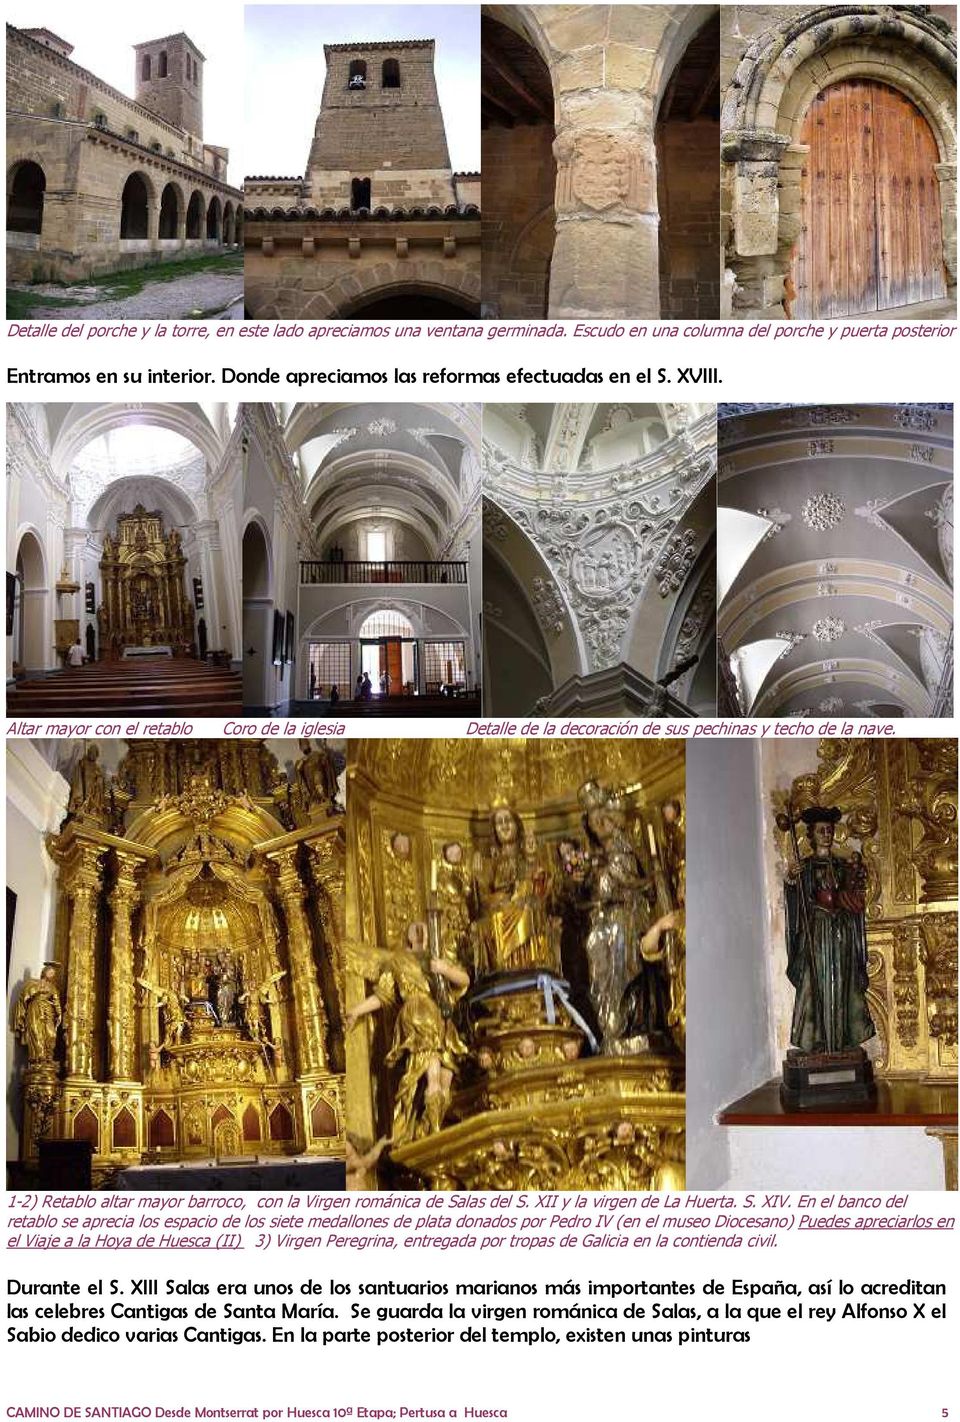 1-2) Retablo altar mayor barroco, con la Virgen románica de Salas del S. XII y la virgen de La Huerta. S. XIV.